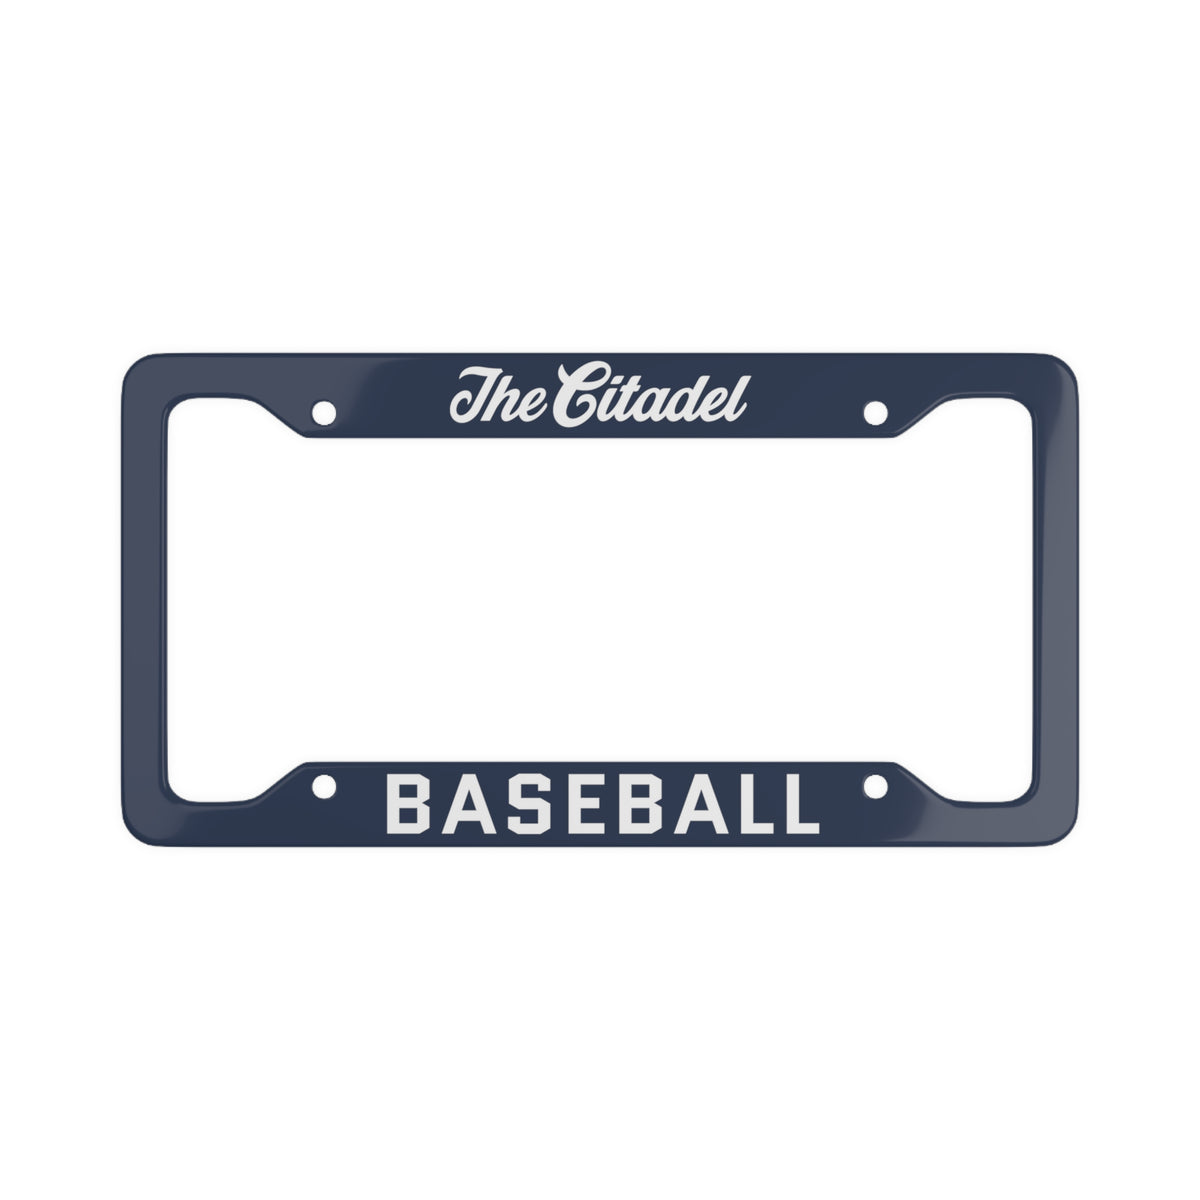 The Citadel, Baseball License Plate Frame